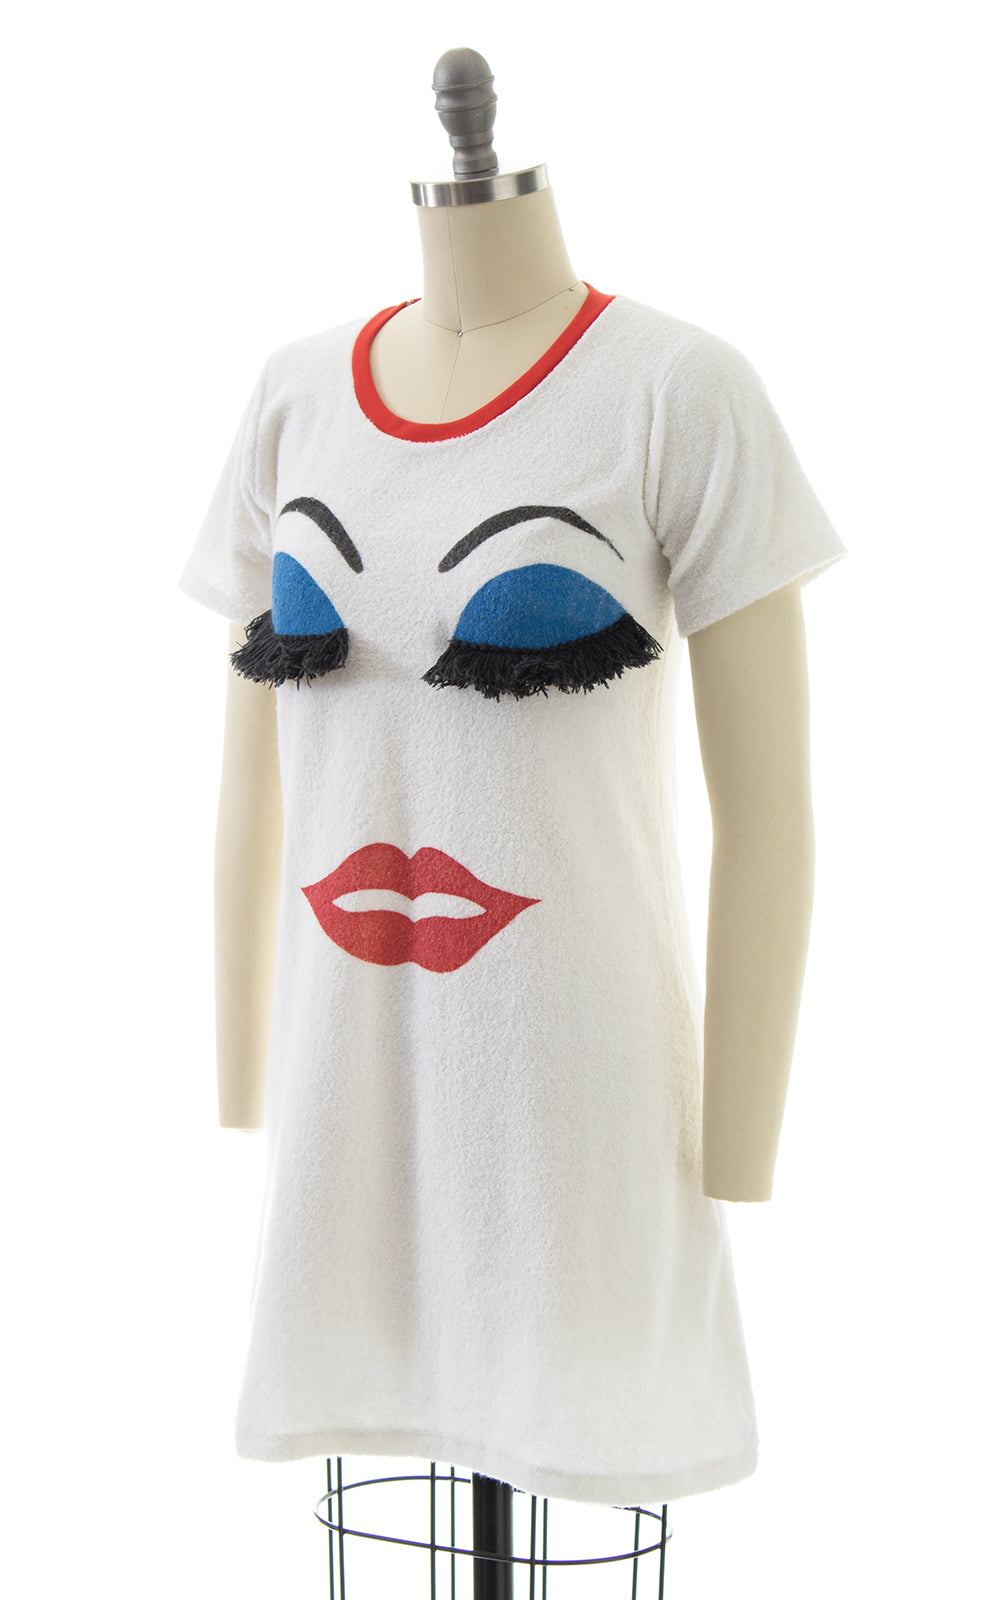 1980s Makeup Face Novelty Terrycloth Dress with Fringe Eyelashes